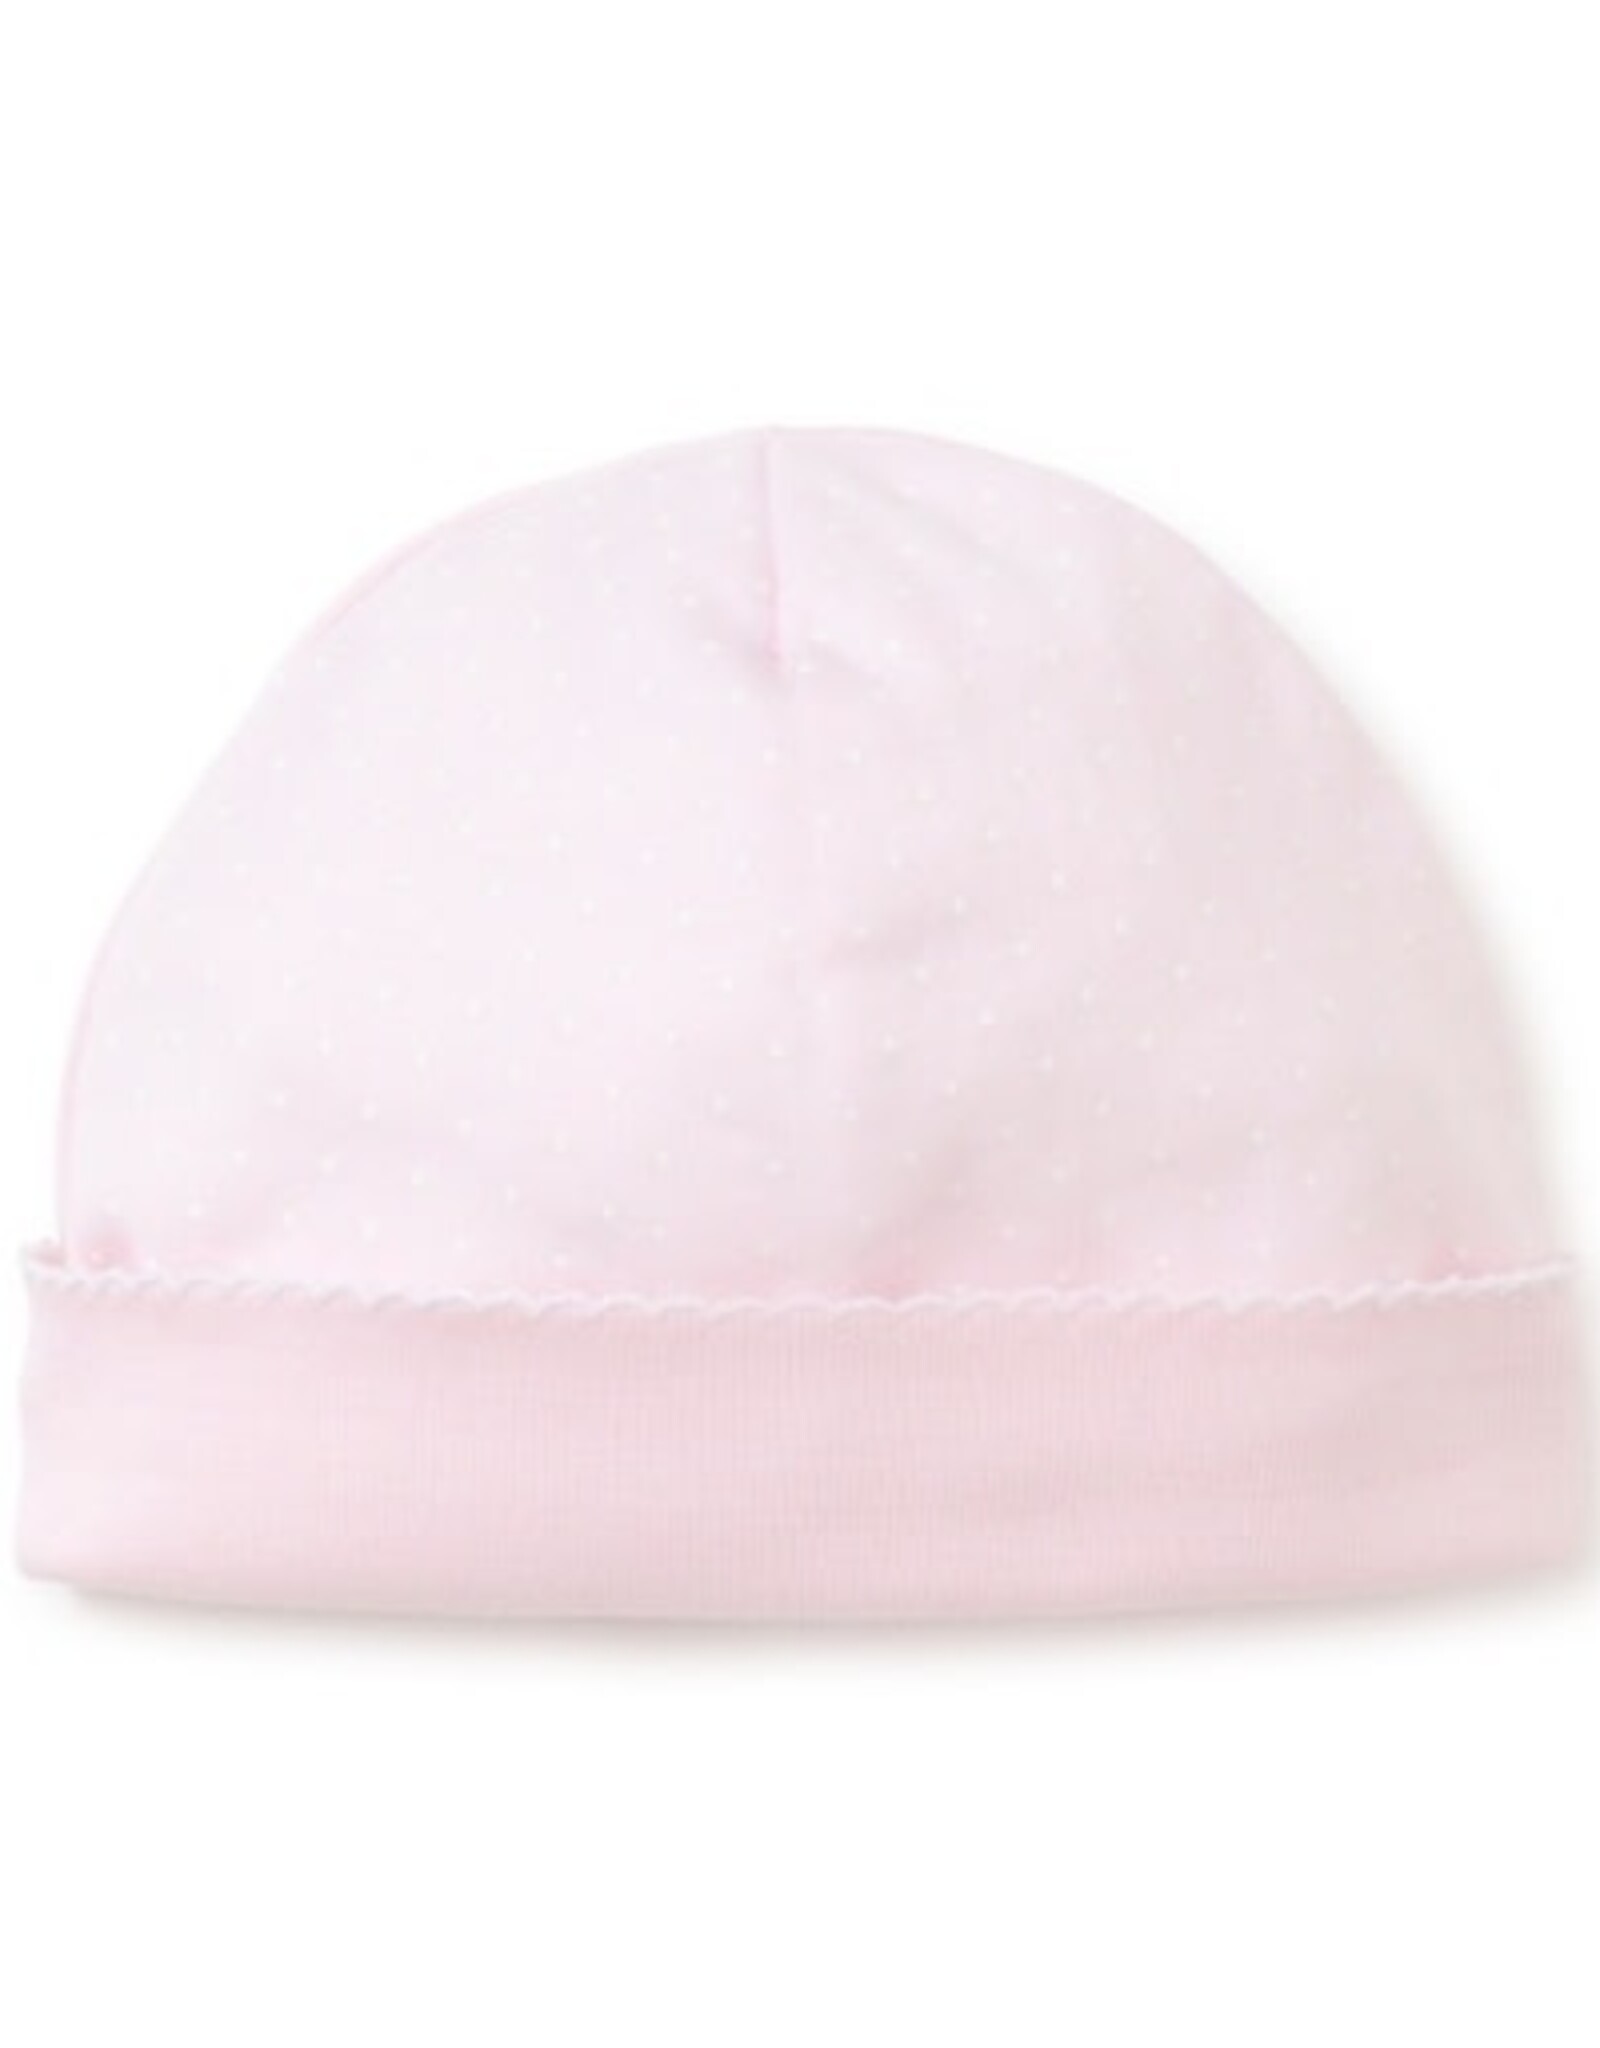 Kissy Kissy New Kissy Dots Print Hat, Pink/White